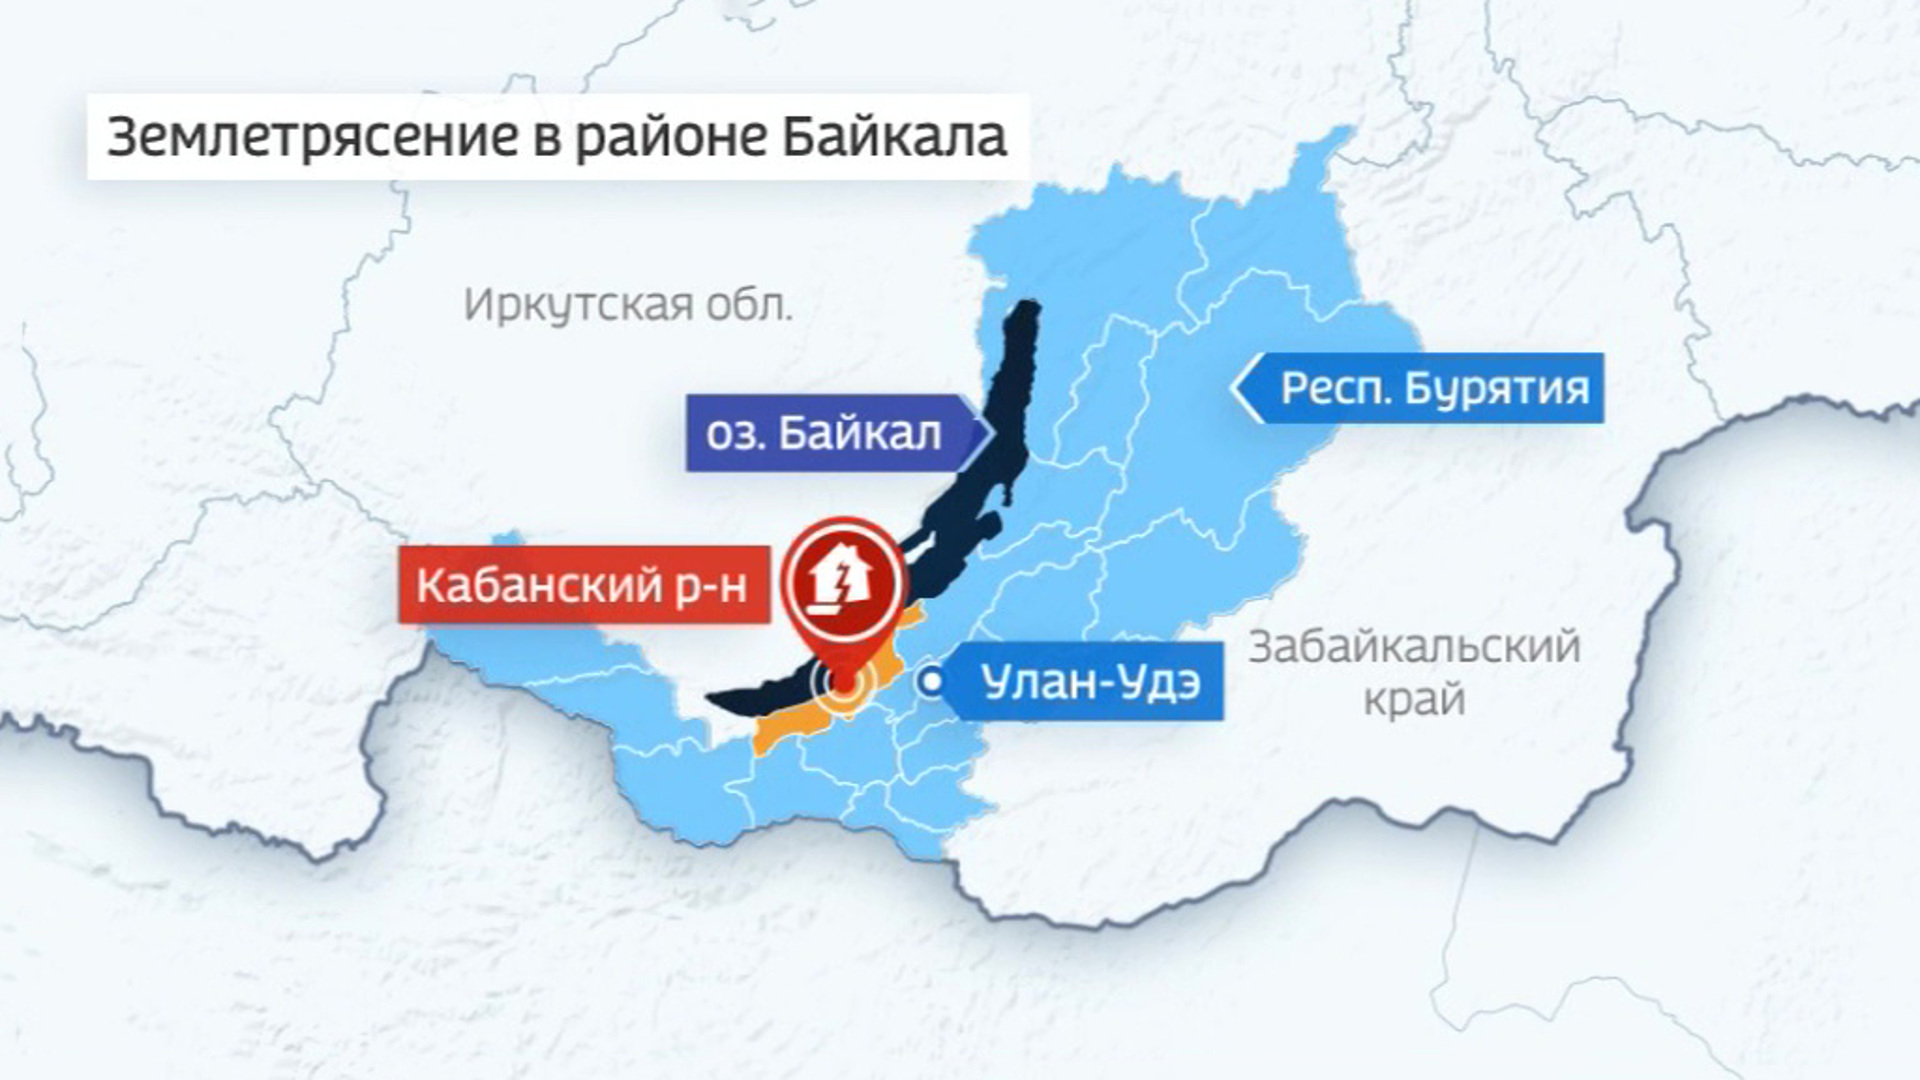 Землетрясение в районе озера Байкал